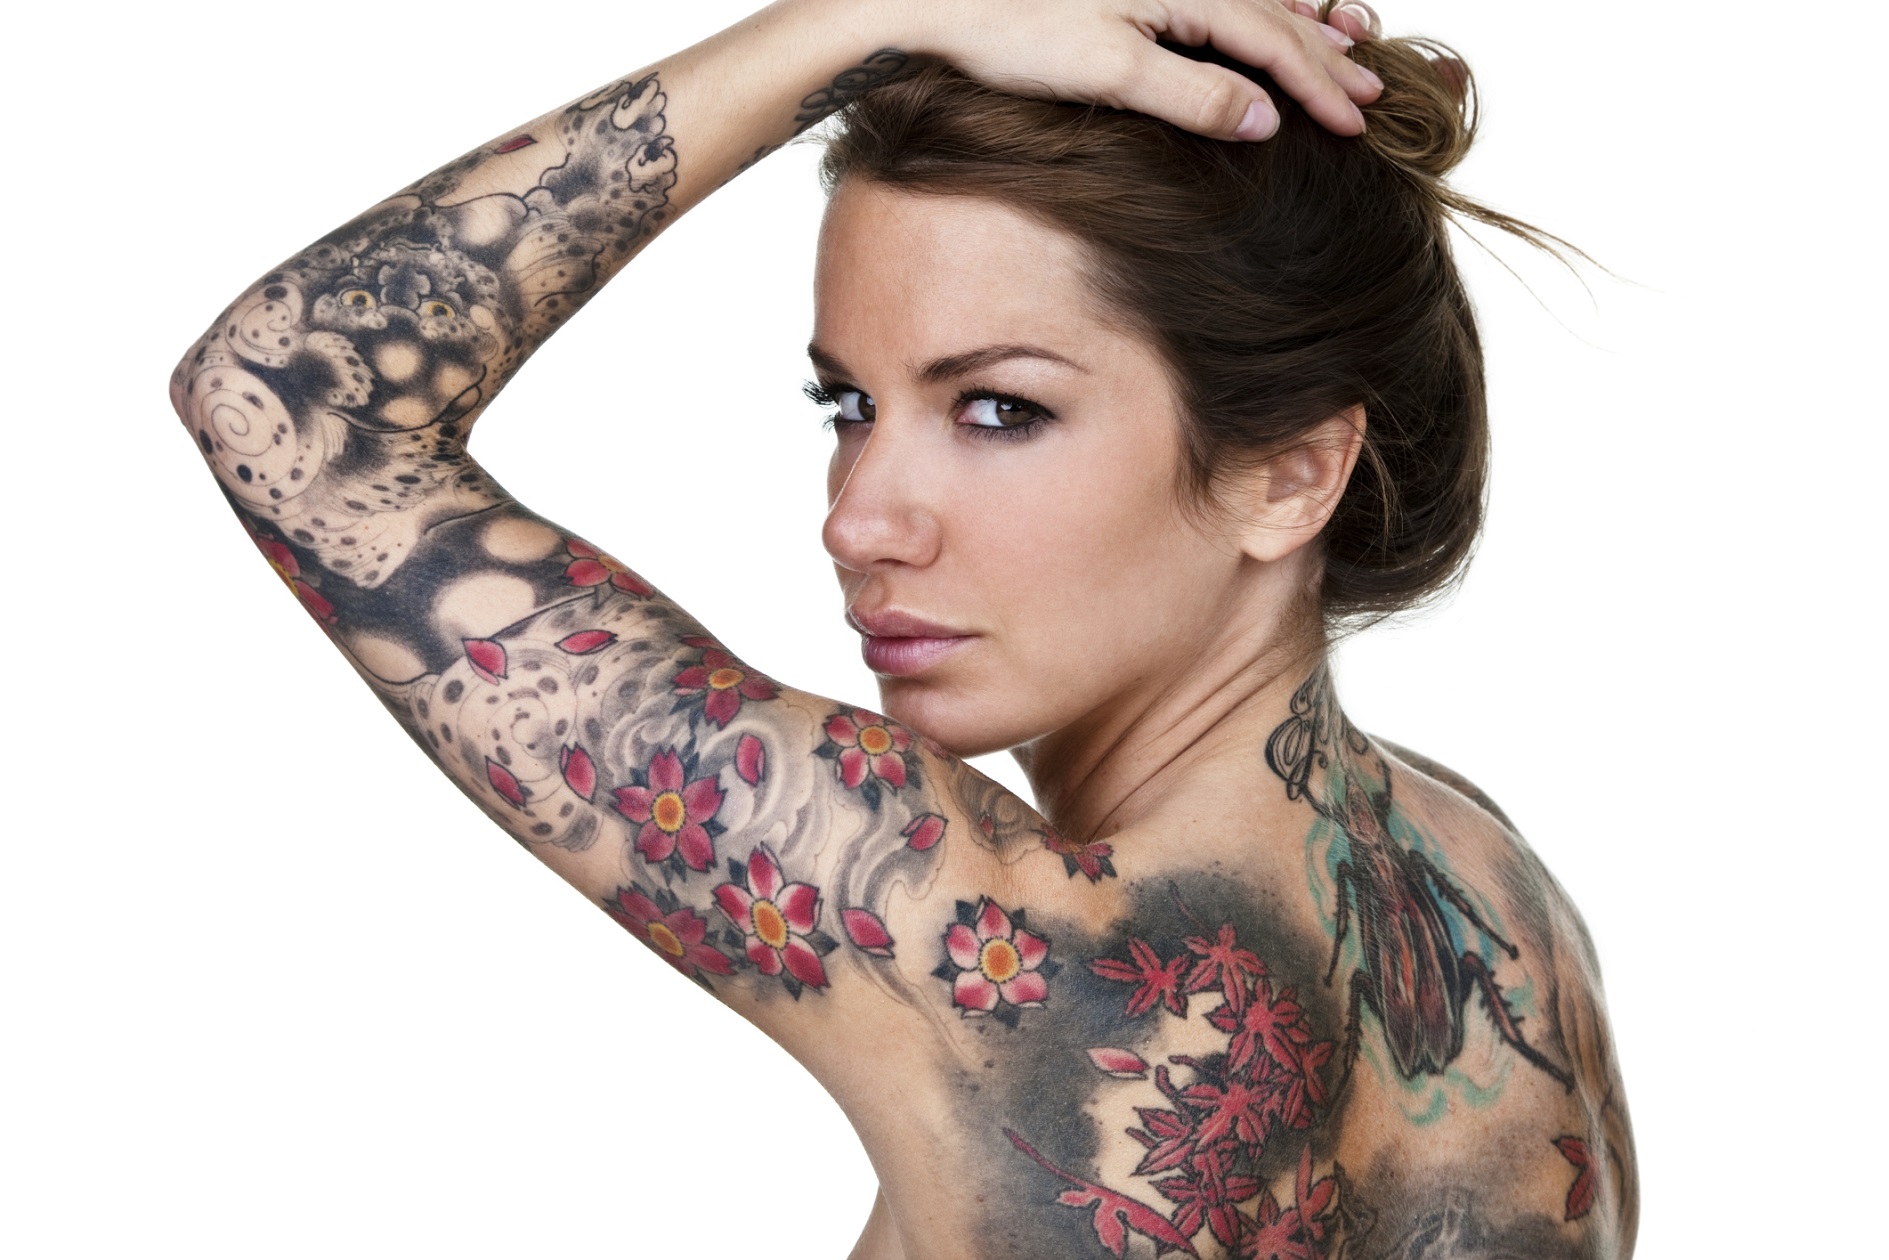 Tatuaggi sul braccio per le donne